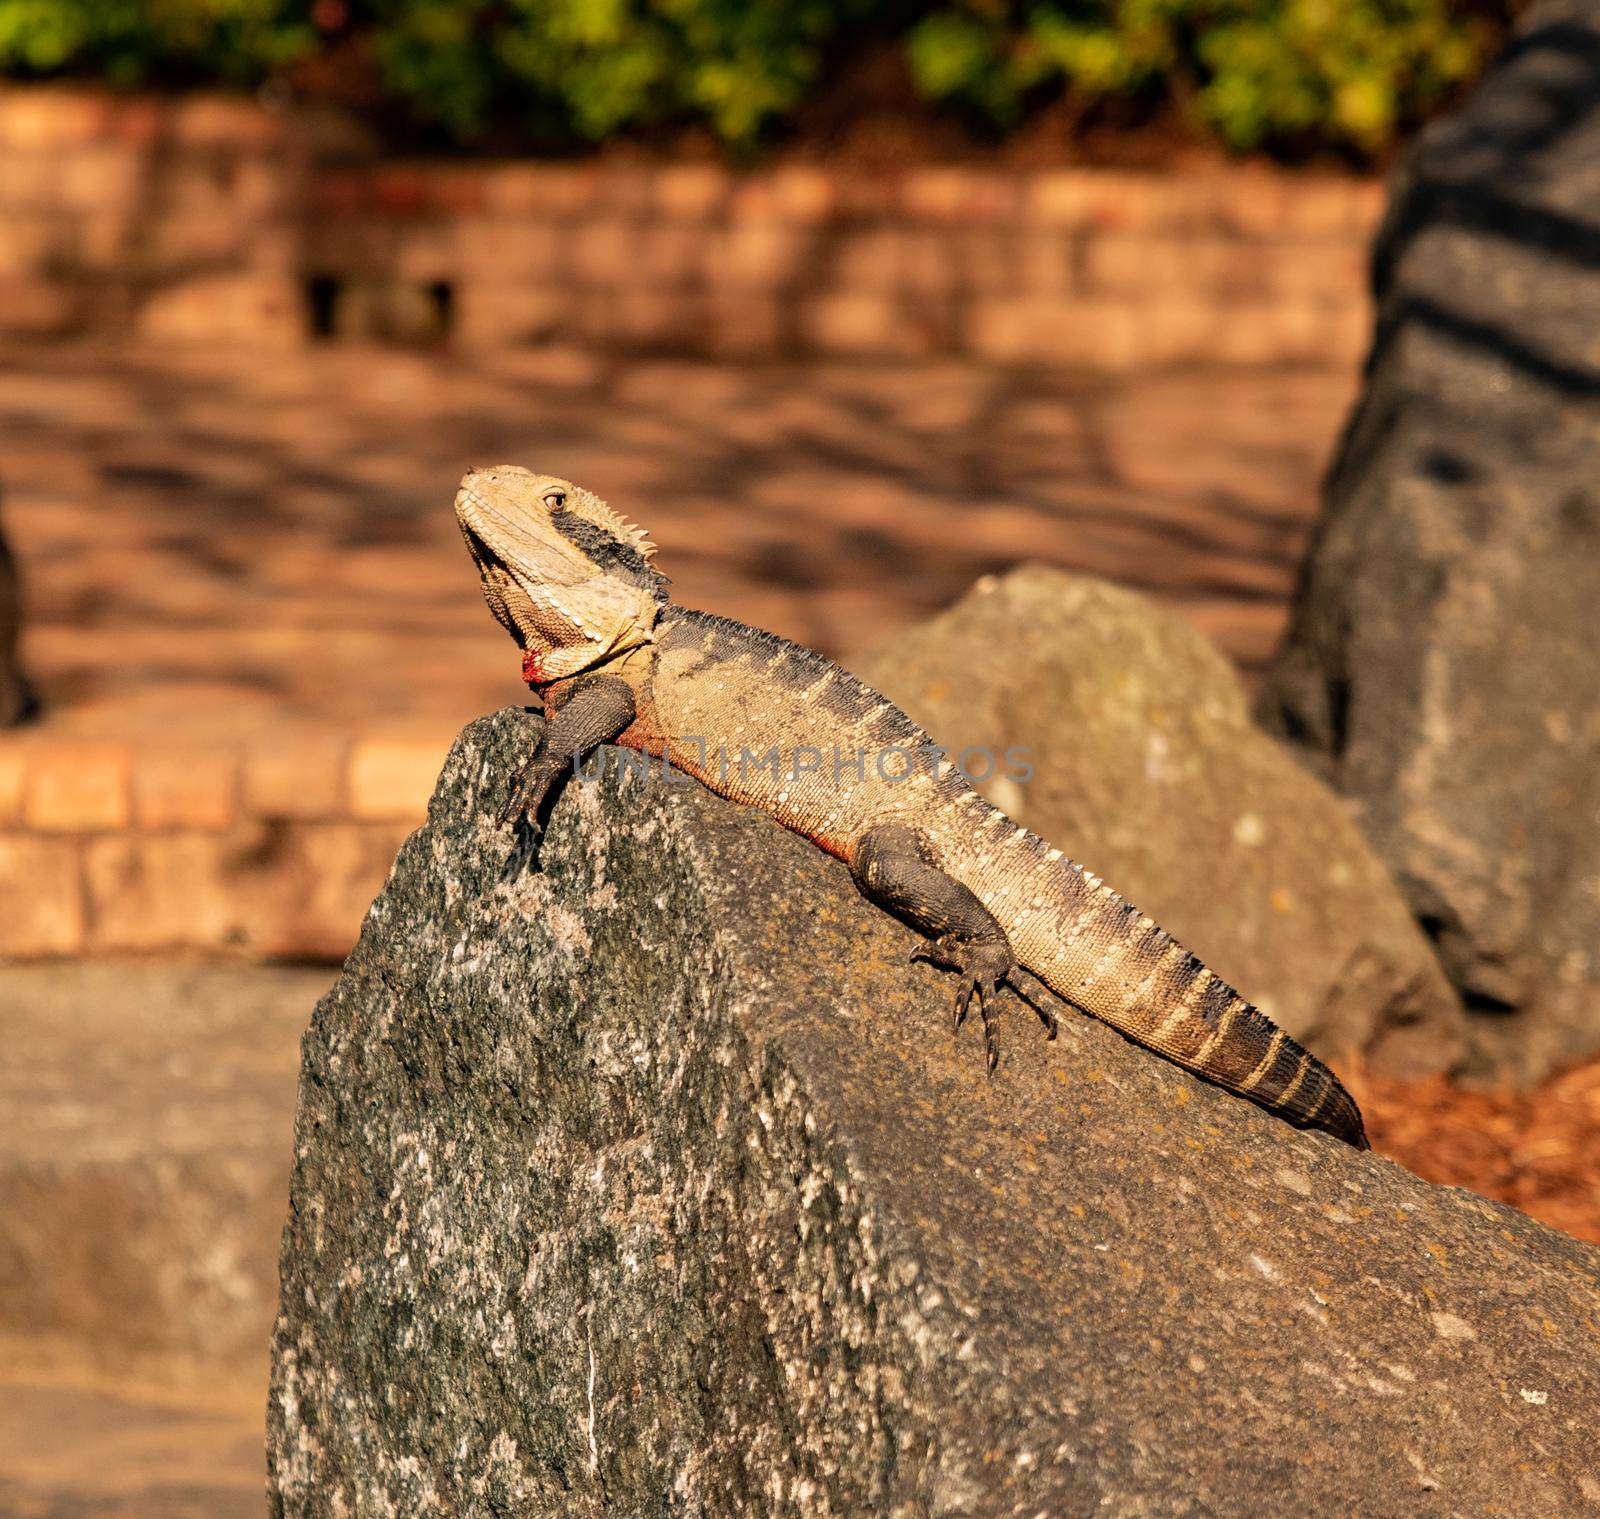 A lizard sunbathing on rocks by Yagyaparajuli